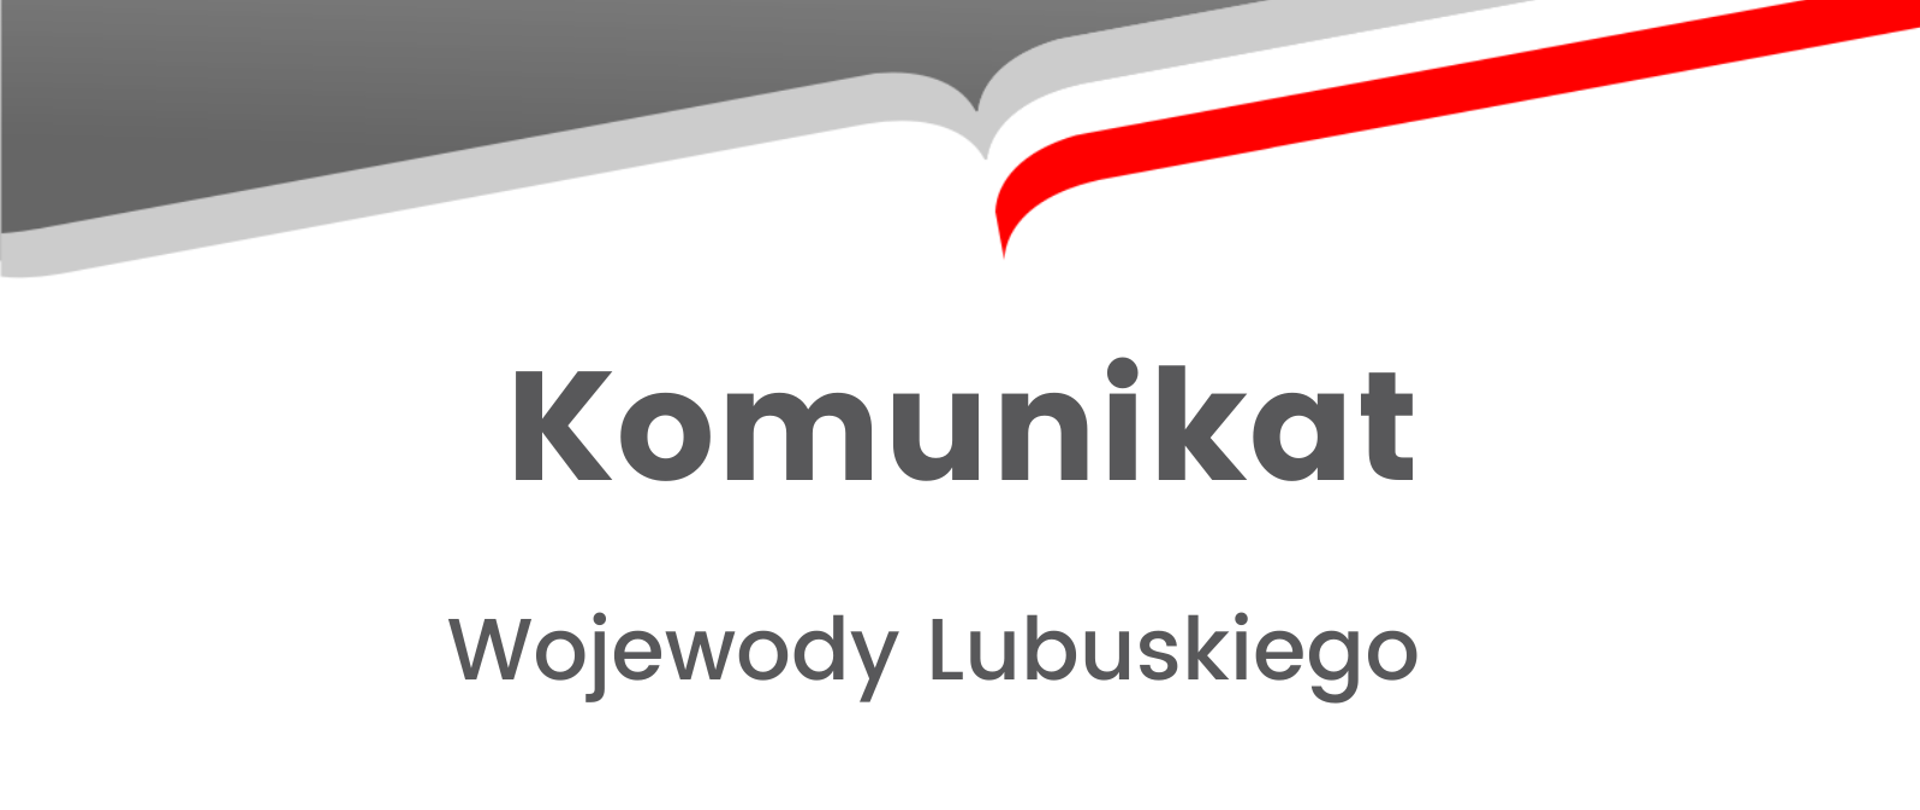 Komunikat Wojewody Lubuskiego 